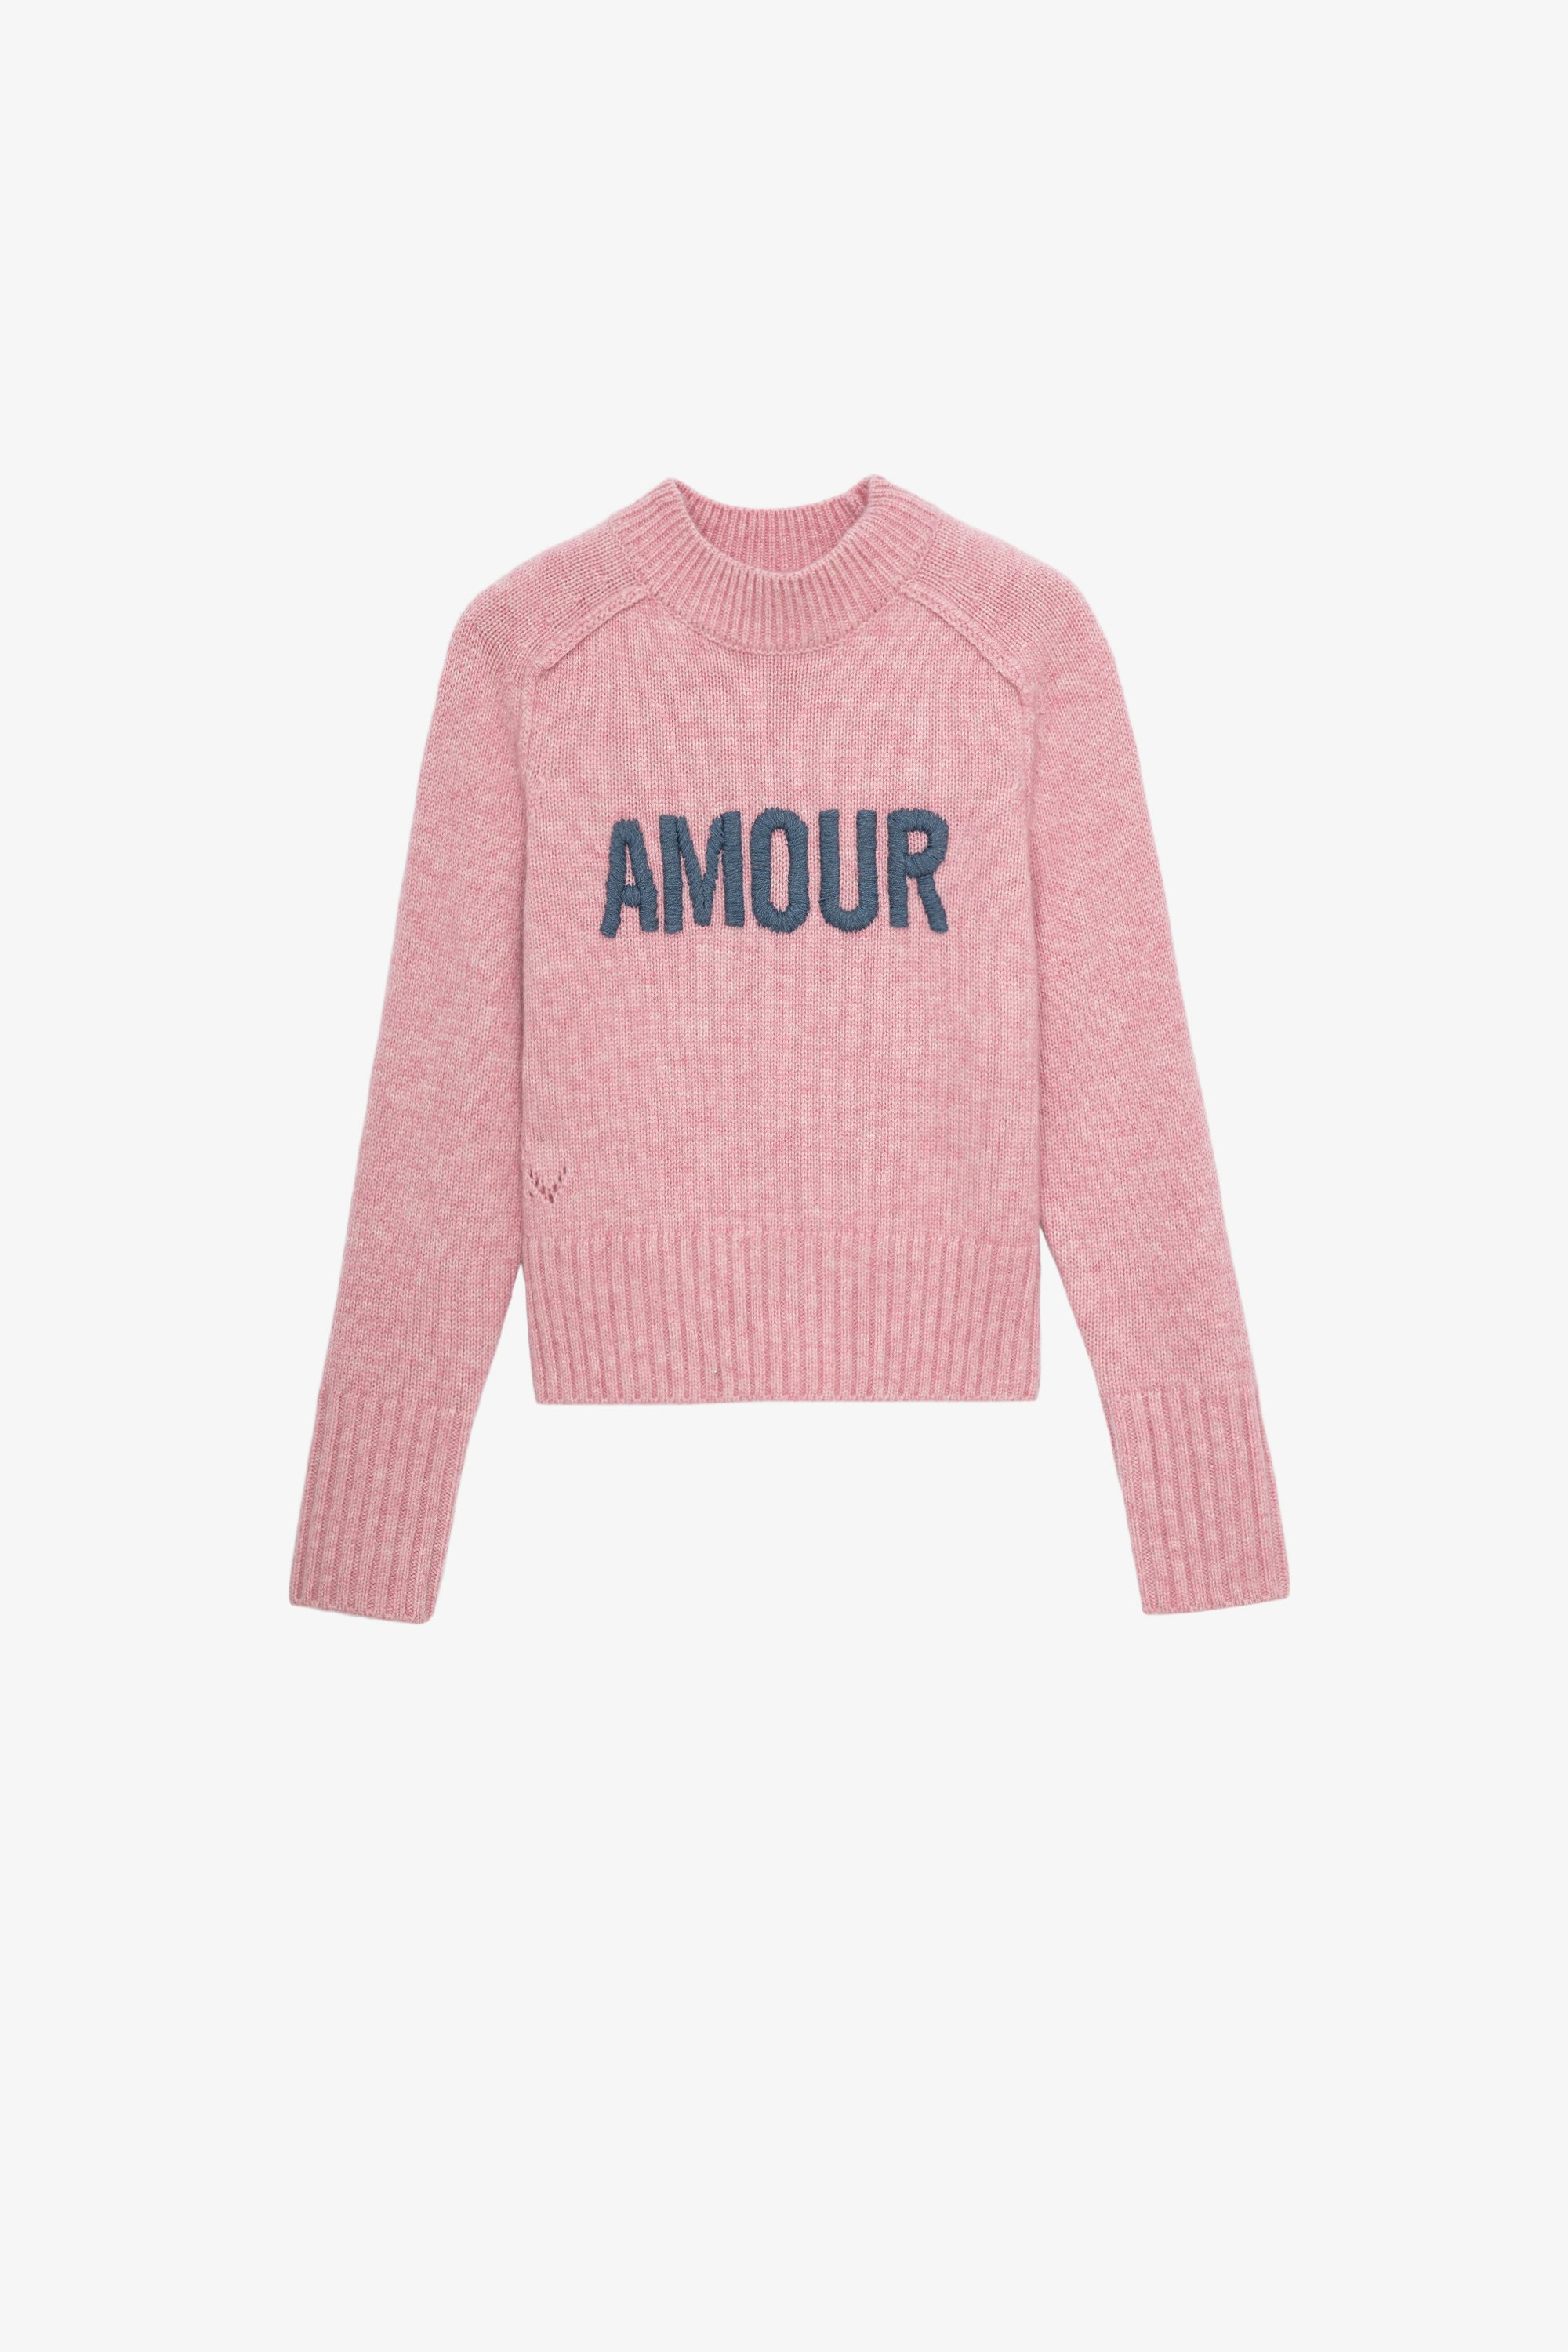 Maglione Milan Junior  Maglione rosa in maglia a maniche lunghe con scritta "Amour" a contrasto - Junior 